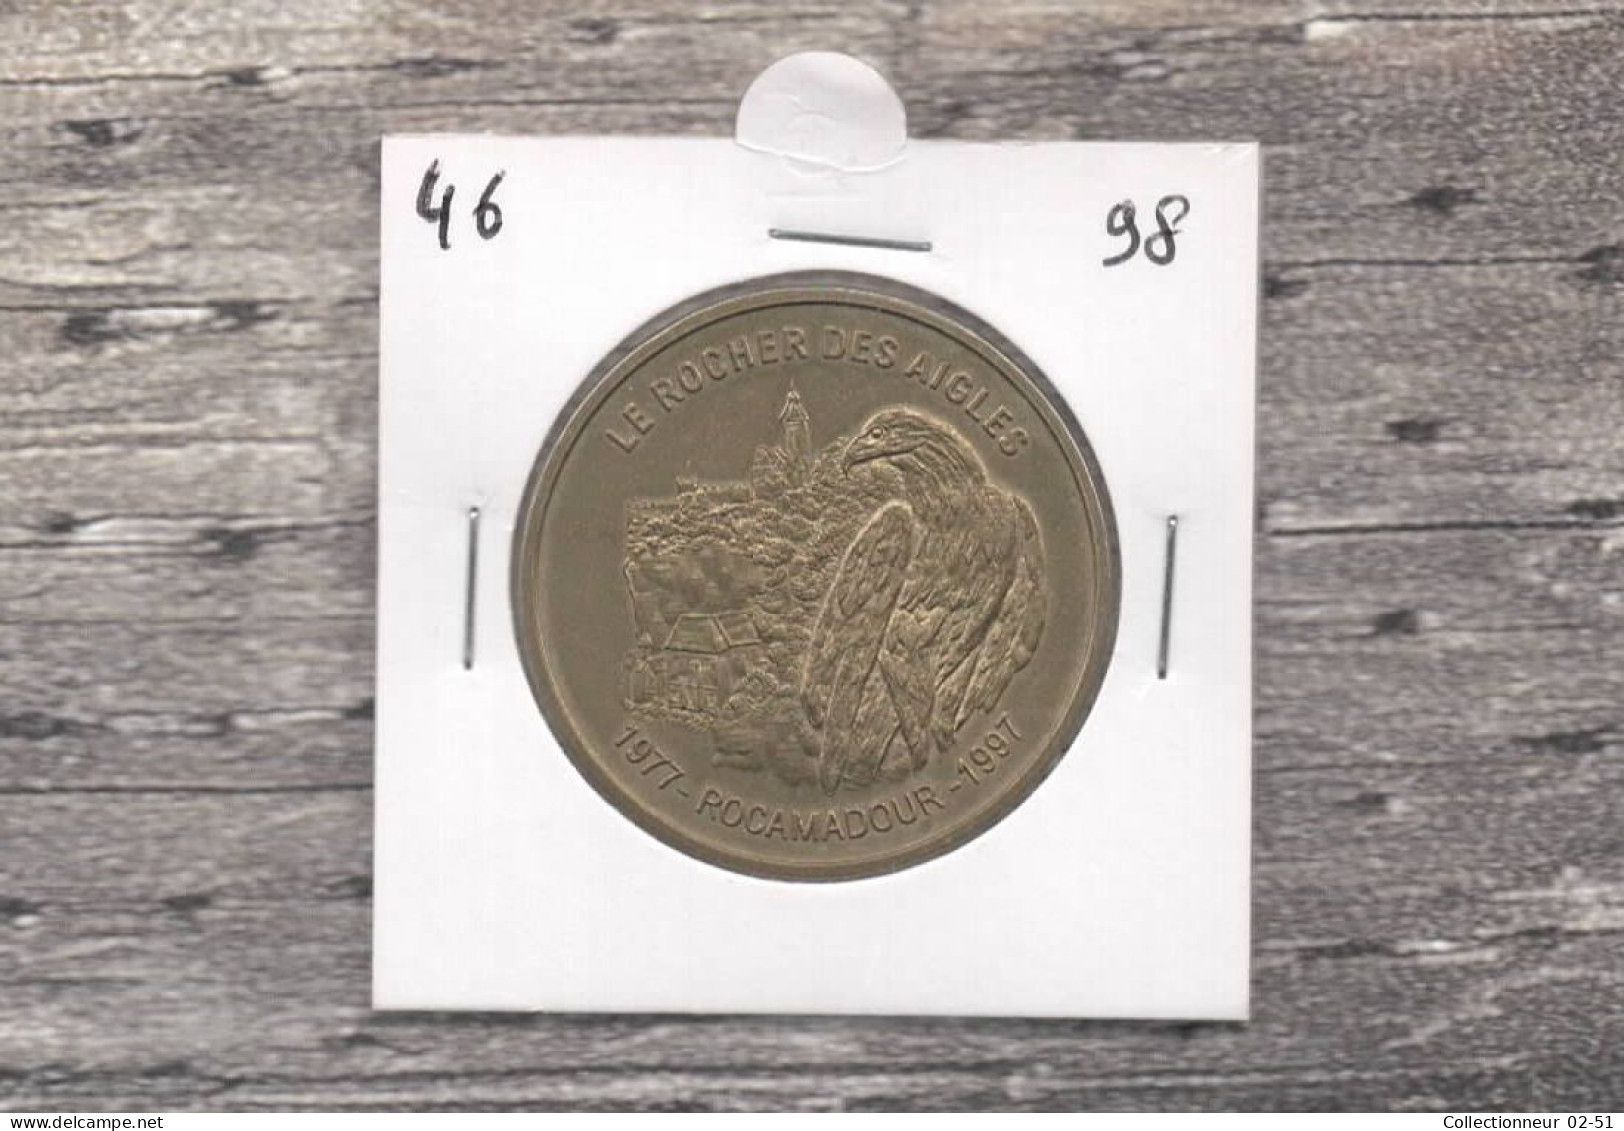 Monnaie De Paris : Le Rocher Des Aigles - 1998 - Non-datés